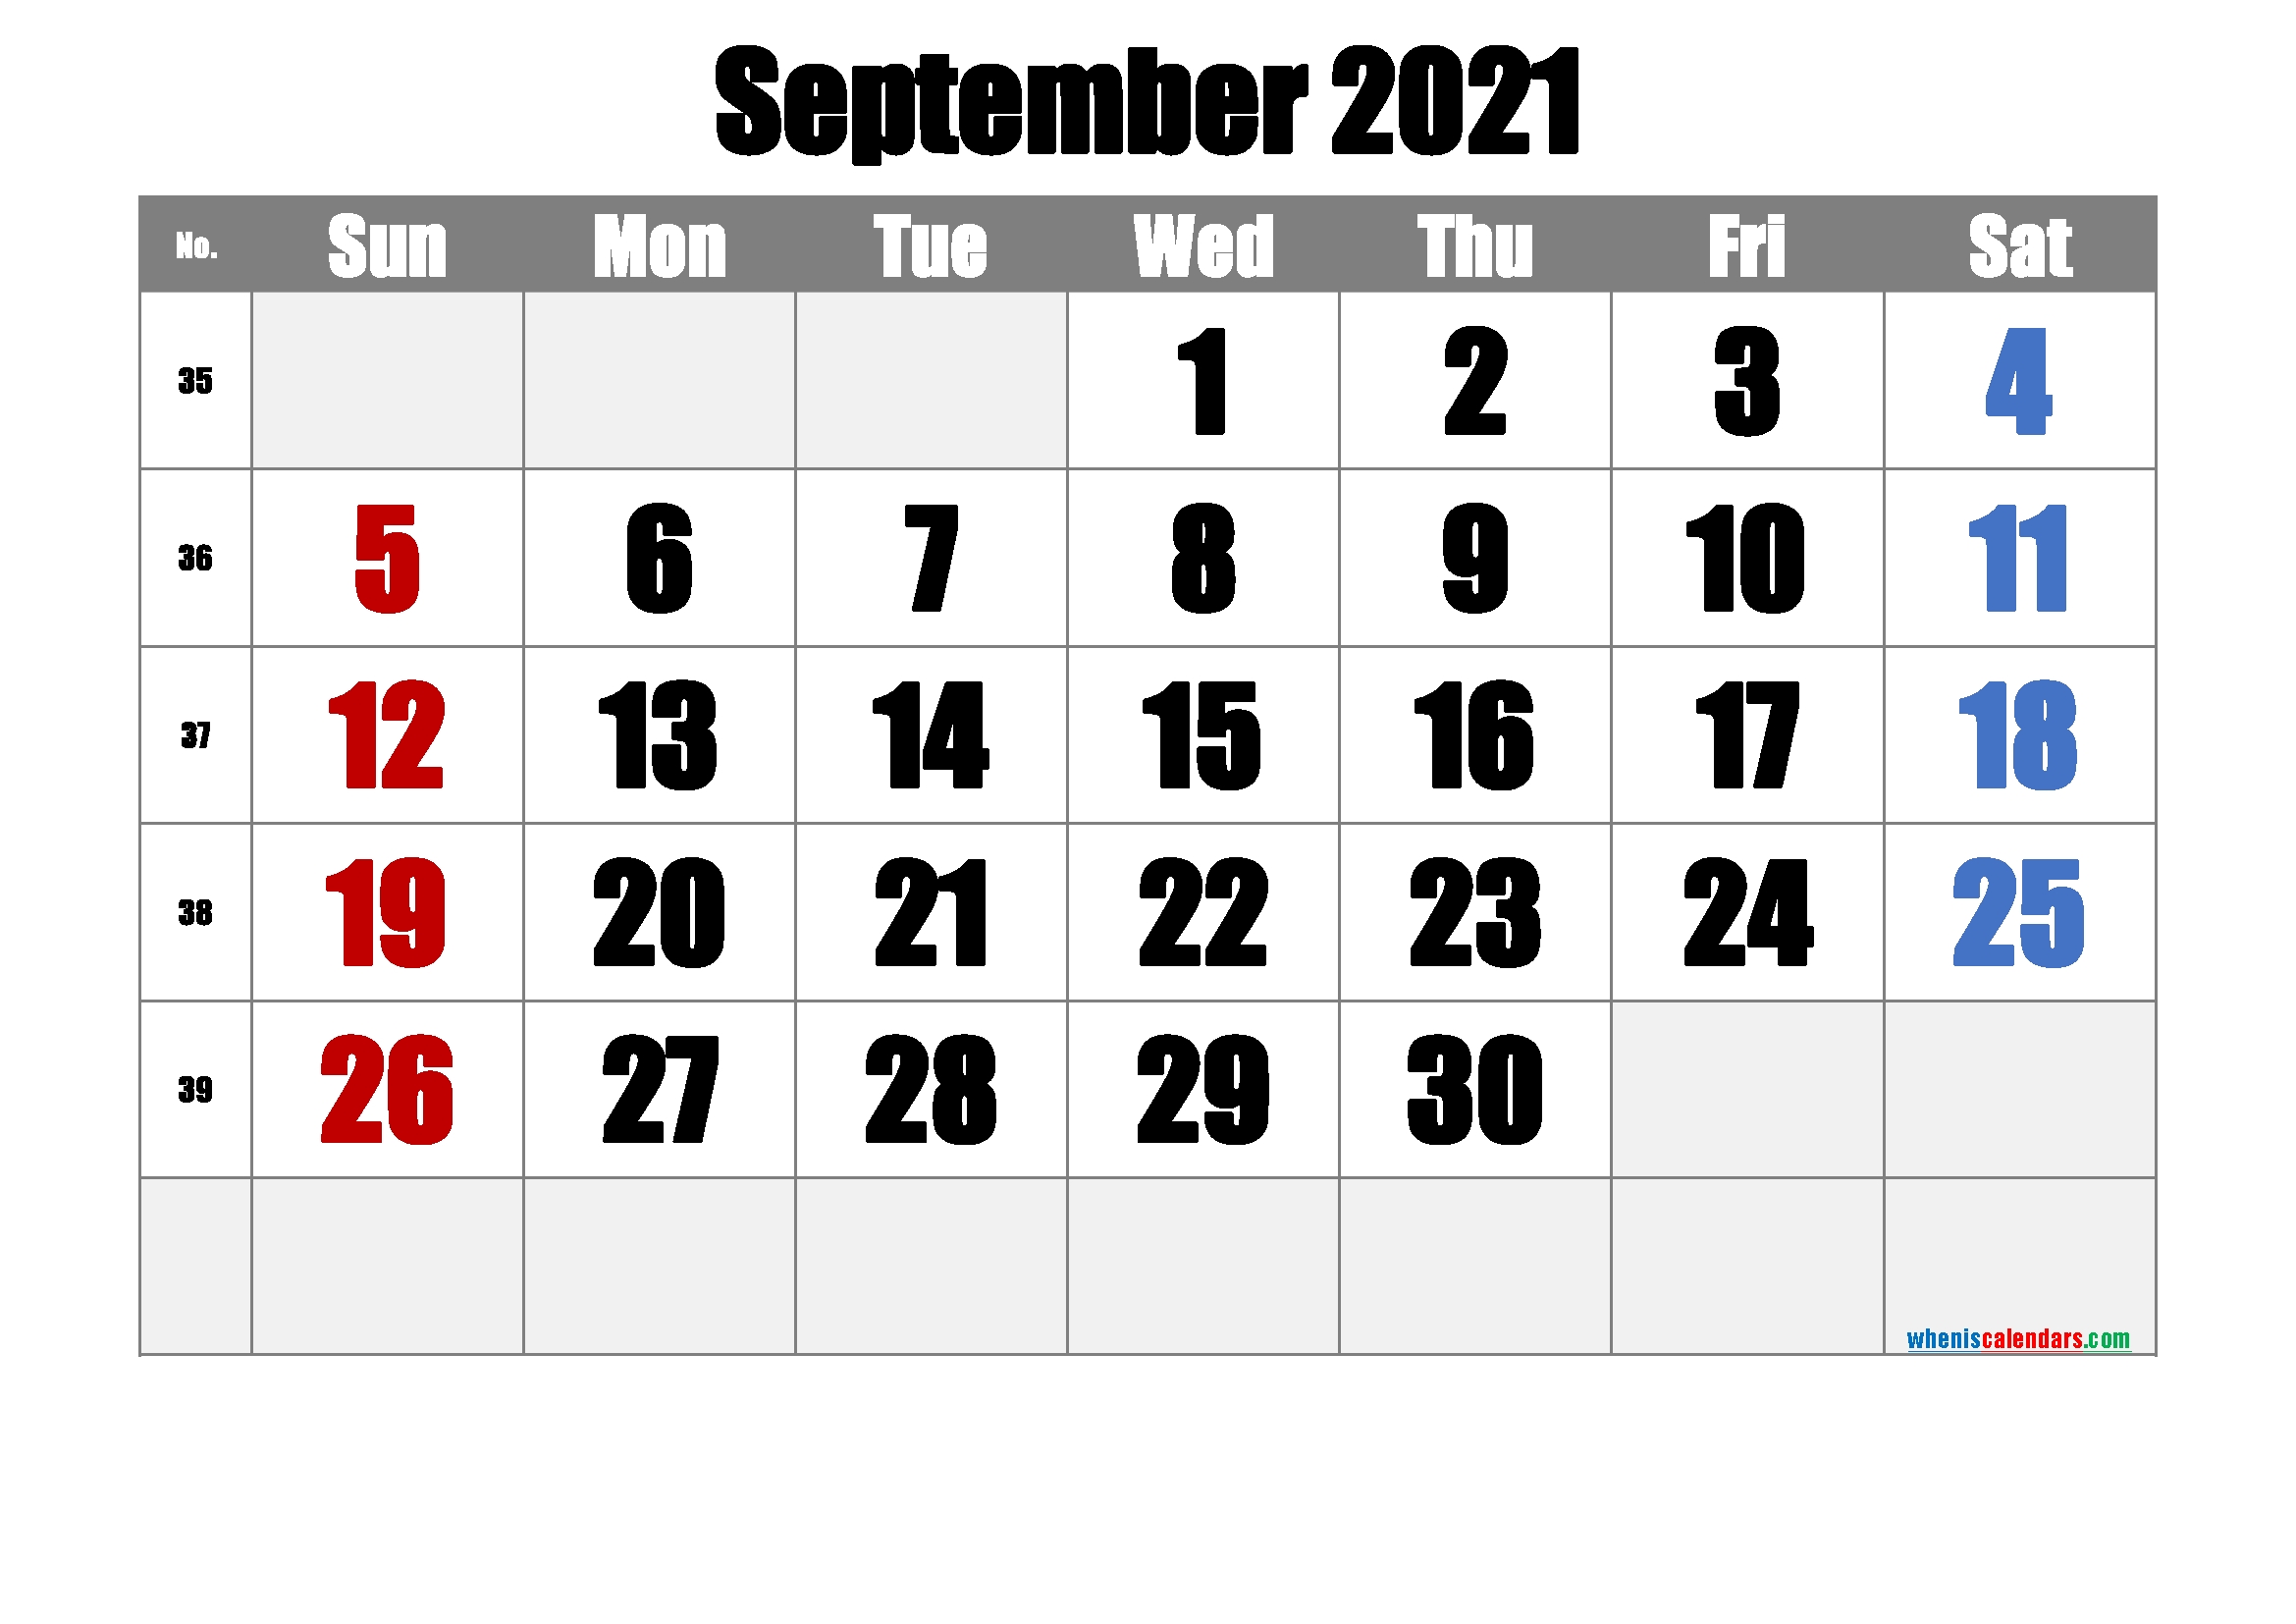 20+ September 2021 Calendar - Free Download Printable Calendar Templates ️ July 2021 Calendar Kalnirnay